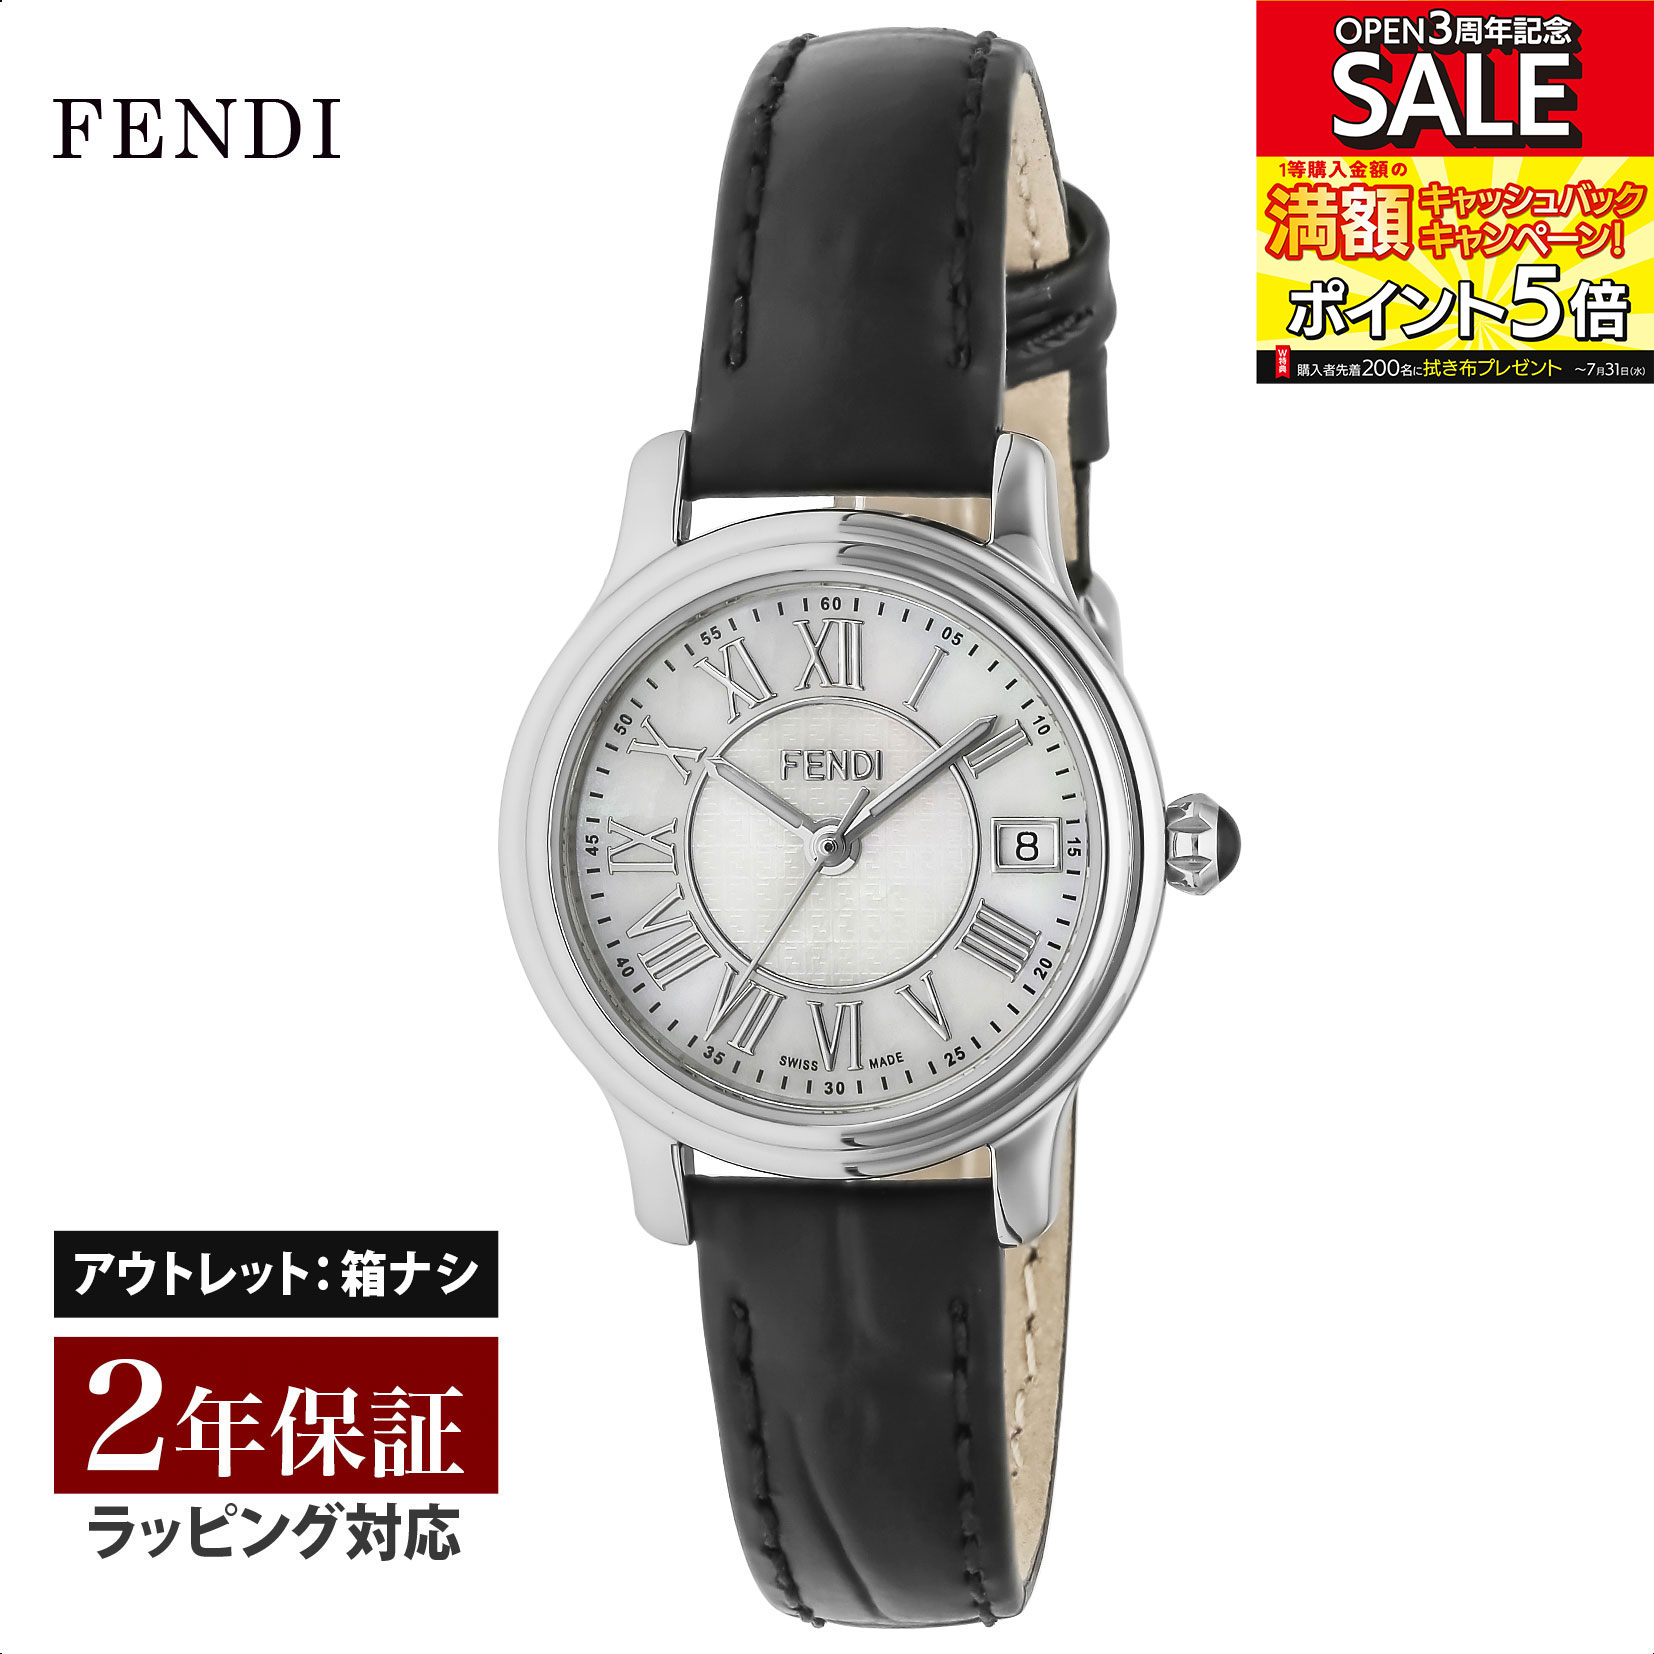 【クリアランスSALE】 FENDI フェンディ CLASSICO ROUND クラシコラウンド クォーツ レディース ホワイトパール F254024511 腕時計 高級腕時計 ブランド 